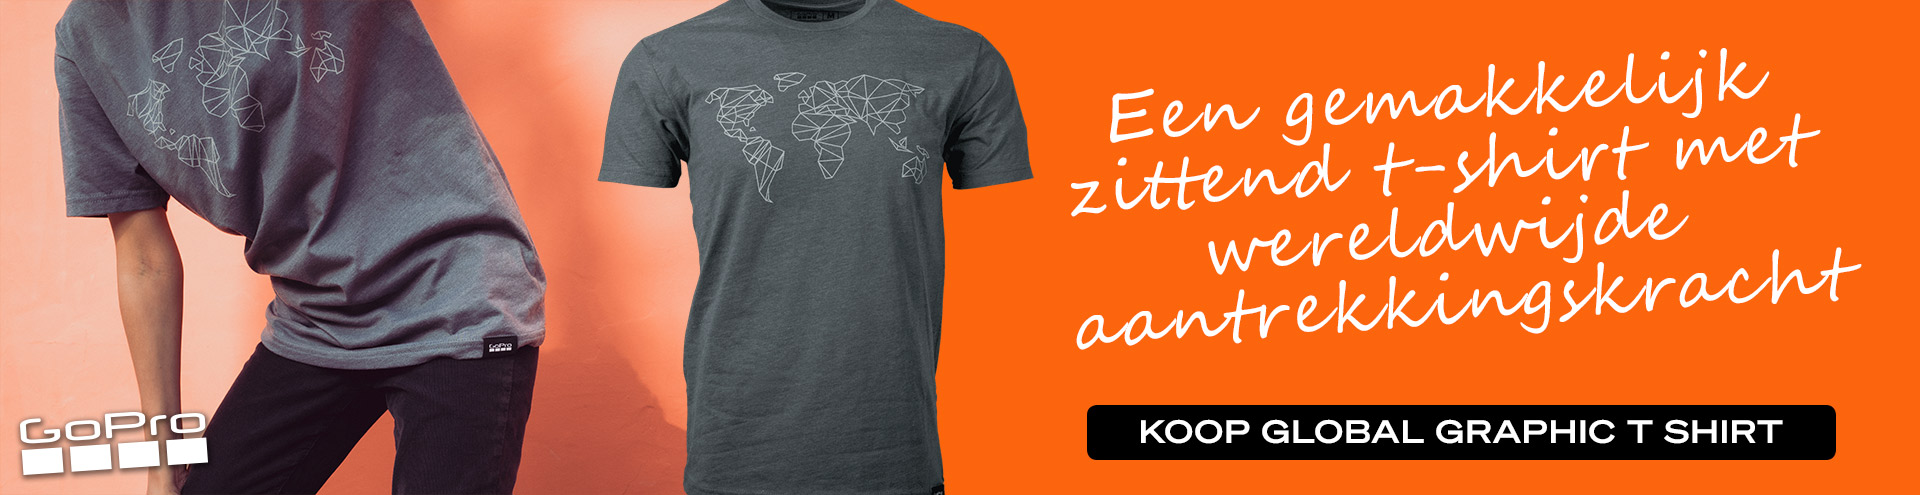 Een gemakkelijk  zittend t-shirt met  wereldwijde  aantrekkingskracht. Koop het Global Graphic T Shirt op gopro.com